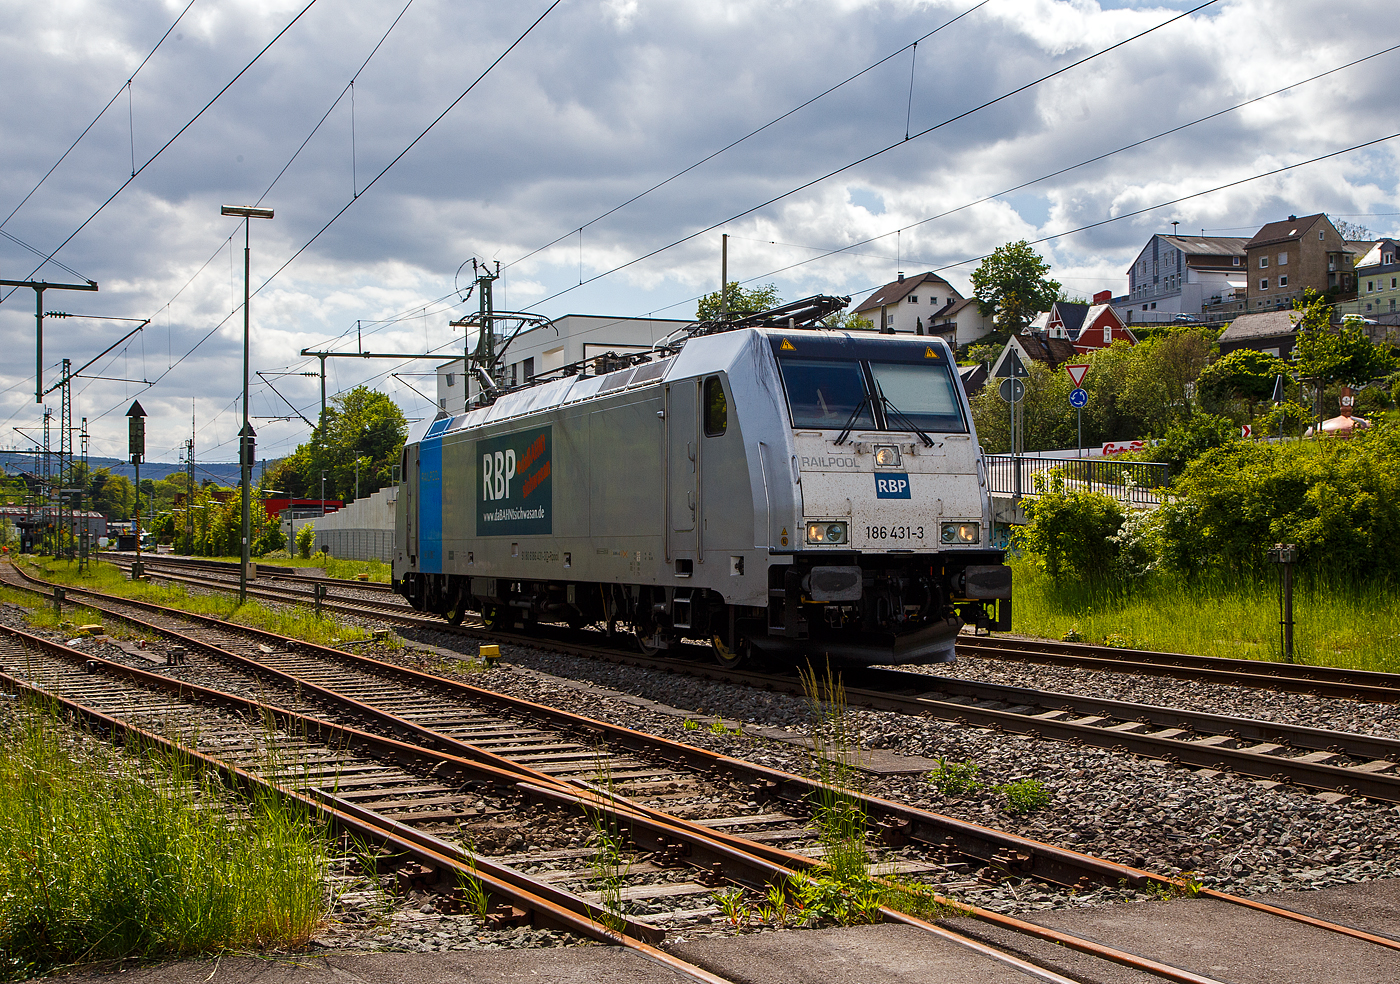 Die an die RBP - Rheinische Bahnpersonal- und Verkehrsgesellschaft mbH (Siegburg) vermietete Railpool 186 431-3  (91 80 6186 431-3 D-Rpool) fährt am 16.05.2023 als Lz (Lokzug) bzw. auf Tfzf (Triebfahrzeugfahrt) durch Niederschelden in Richtung Siegen. Hinweis ich stehe an der Schranke vom Bü 343 – km 112,183 der Siegstrecke.

Die Bombardier TRAXX F140 MS(2E) wurde 2015 von Bombardier in Kassel unter der Fabriknummer 35185 gebaut und an die Railpool GmbH (München) ausgeliefert. Die Multisystemlokomotive hat die Zulassungen bzw. besitzt die Länderpakete für Deutschland, Österreich, und Tschechien (D/A/CZ). Ursprünglich war sie für Polen, Slowakei, Ungarn und die Niederland (PL/SK/HU/NL) zugelassen, aber aktuell sind diese Länderkürzel an die Lok durchgestrichen.


Der derzeitige Mieter die RBP - Rheinische Bahnpersonal- und Verkehrsgesellschaft mbH in Siegburg, ist eine junge und moderne Eisenbahnverkehrsgesellschaft, speziell für Bahn- und Verkehrsbetriebe. 